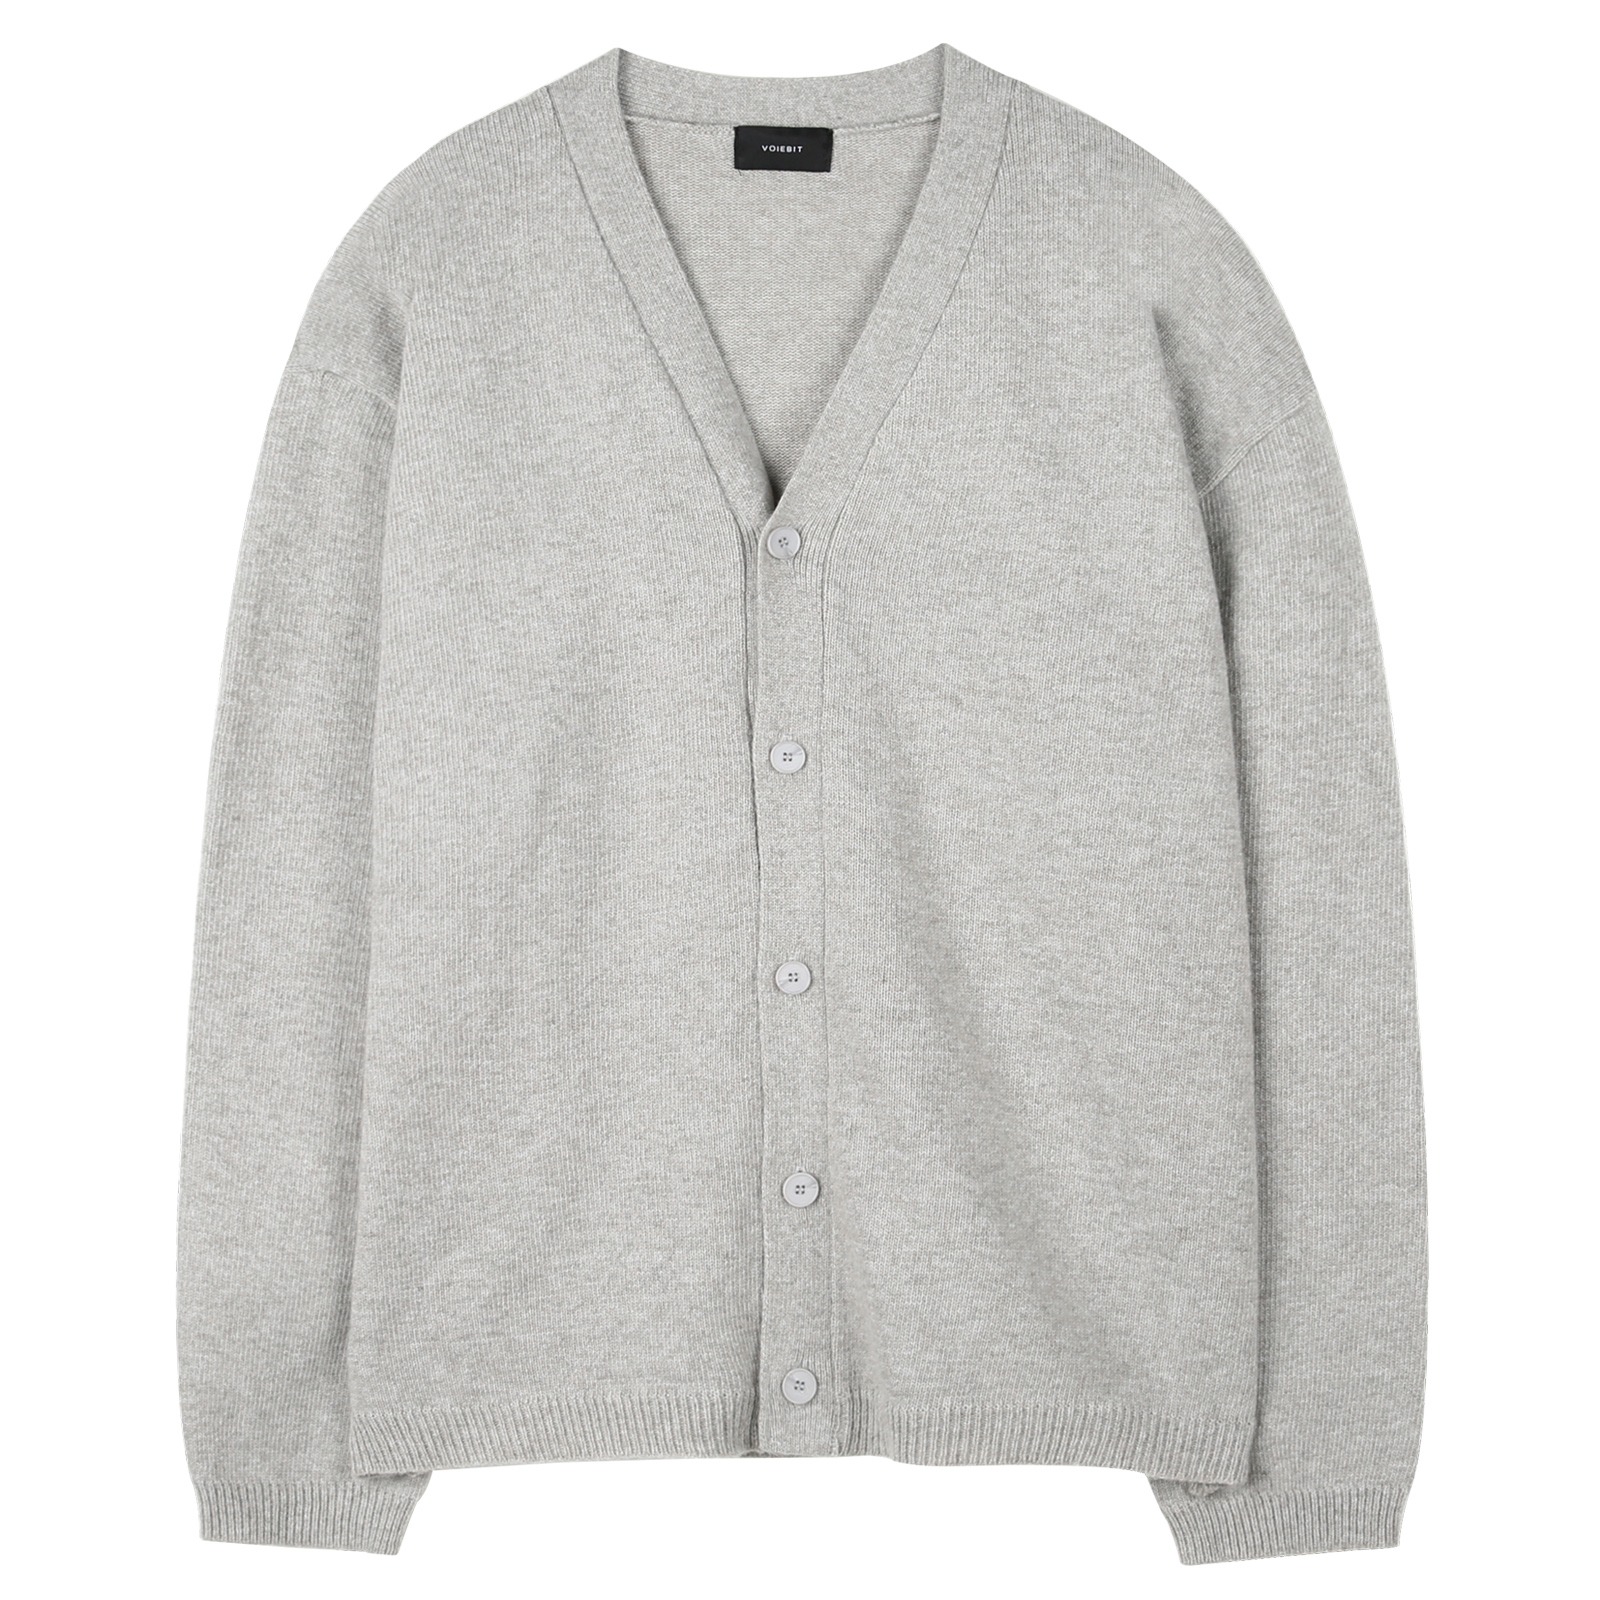 V168 cash wool knit cardigan (light gray)